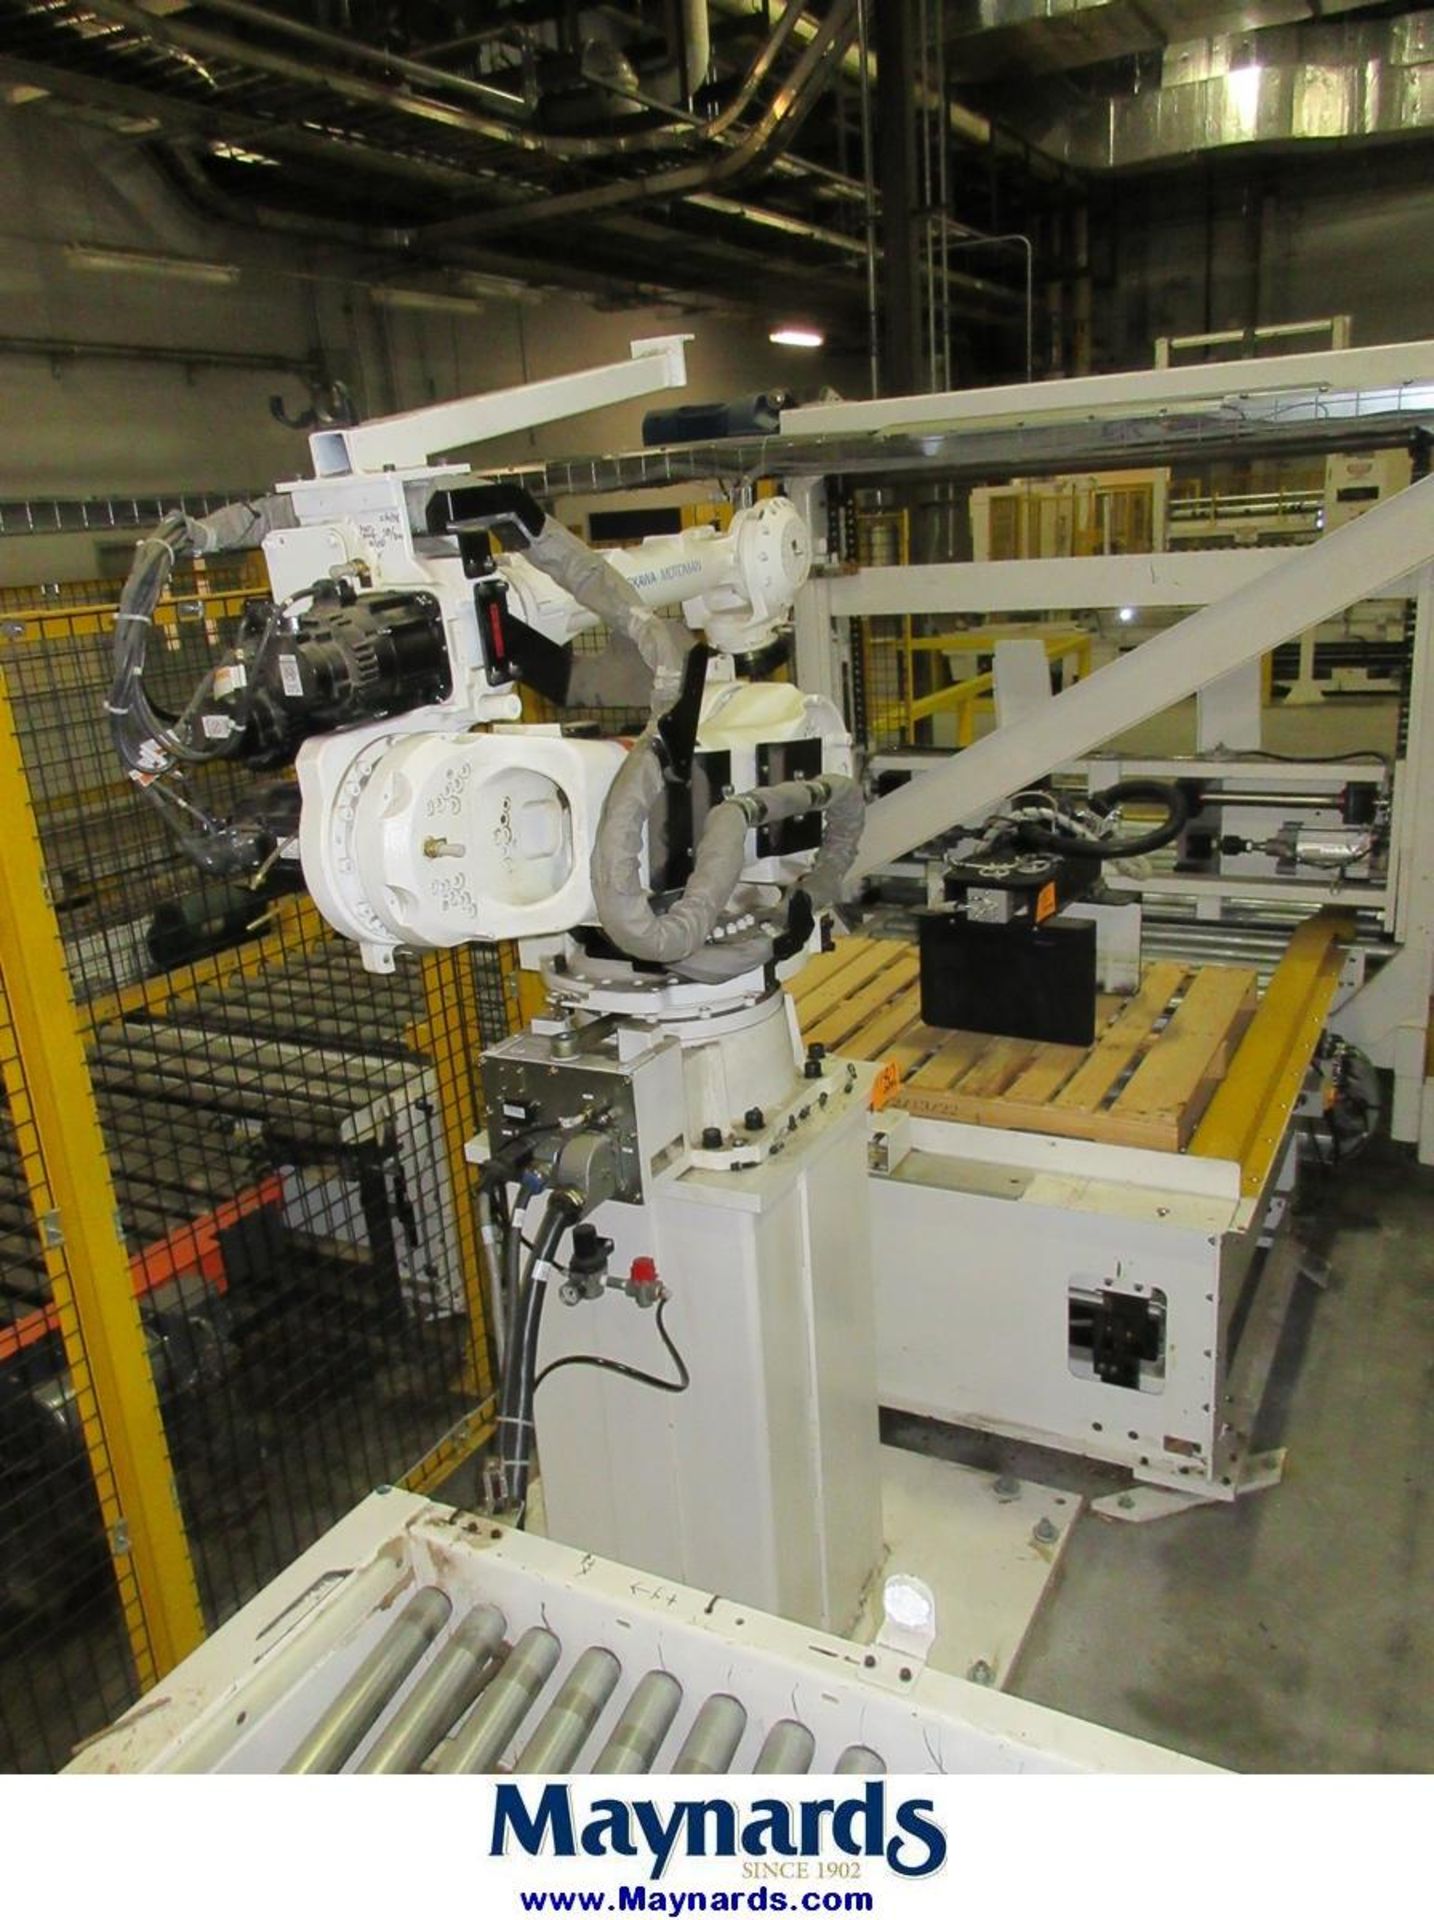 2012 Yaskawa Motoman MPL80 Type YR-MPL0080-A04 Material Handling Robot - Image 4 of 11